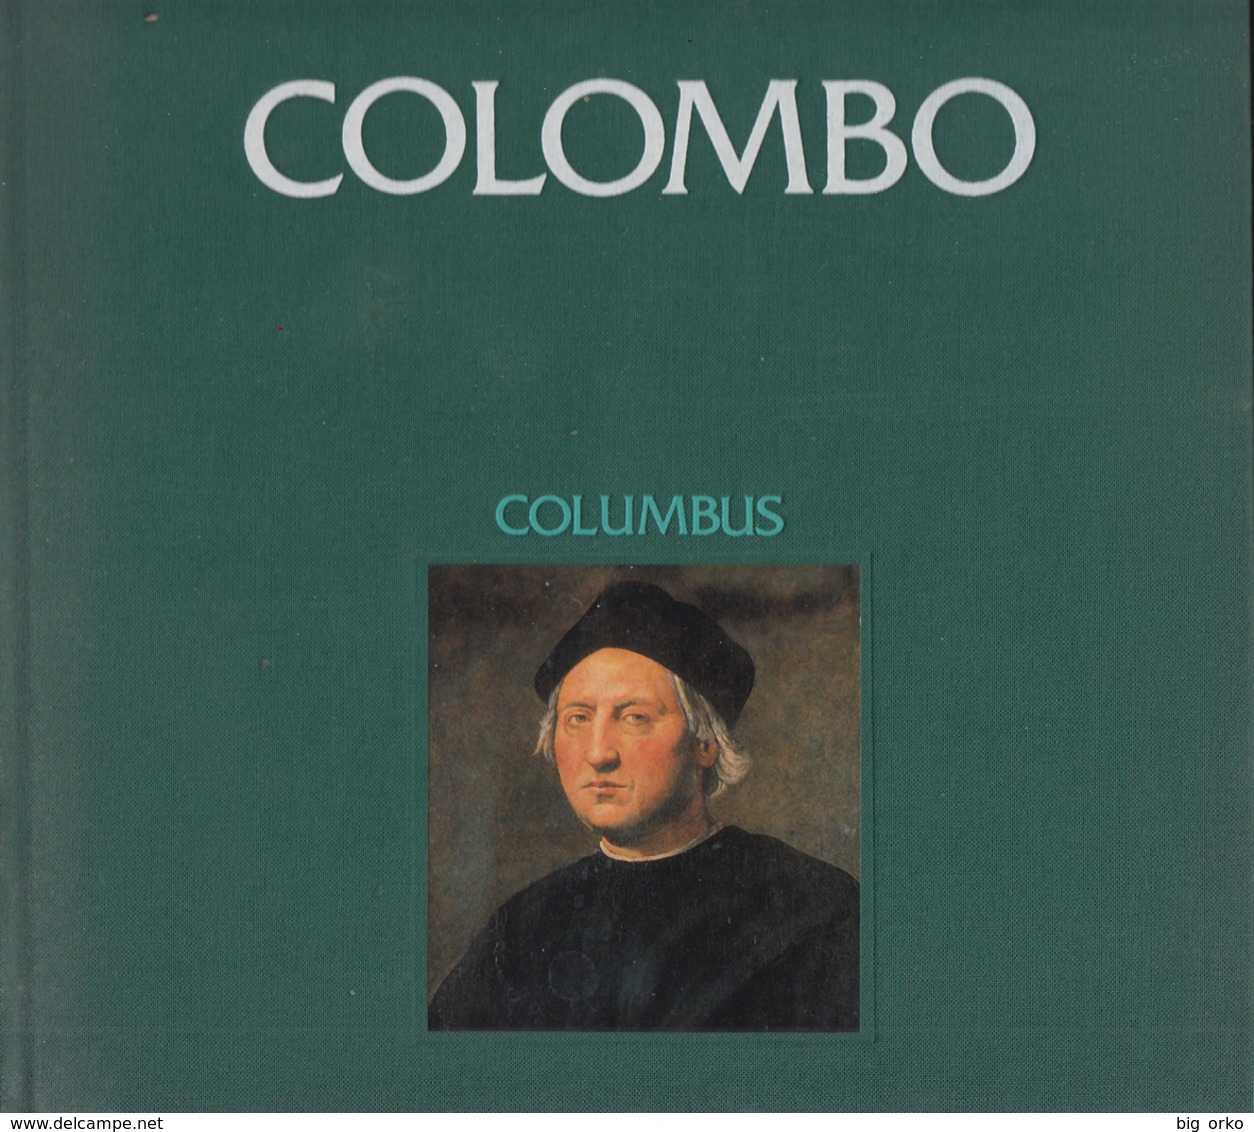 COLOMBO Di Luis Albuquerque (cm.24xcm.24) Inglese E Portoghese (copie Numerate) - Viaggi